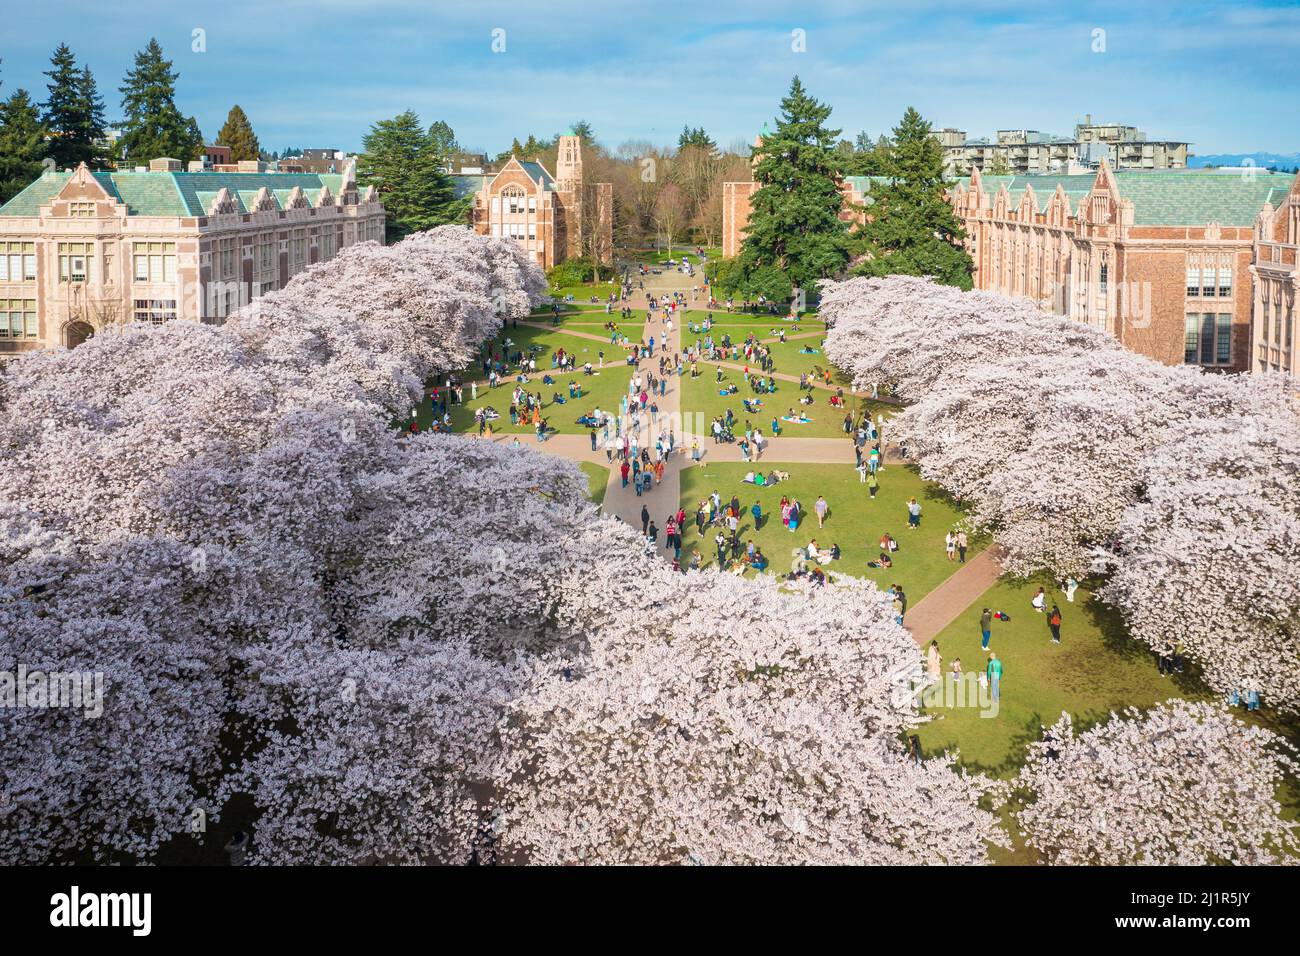 La Universidad de Washington (comúnmente conocida como Washington o UDub) es una universidad pública de investigación en Seattle, Washington, Estados Unidos. Encontrado Foto de stock